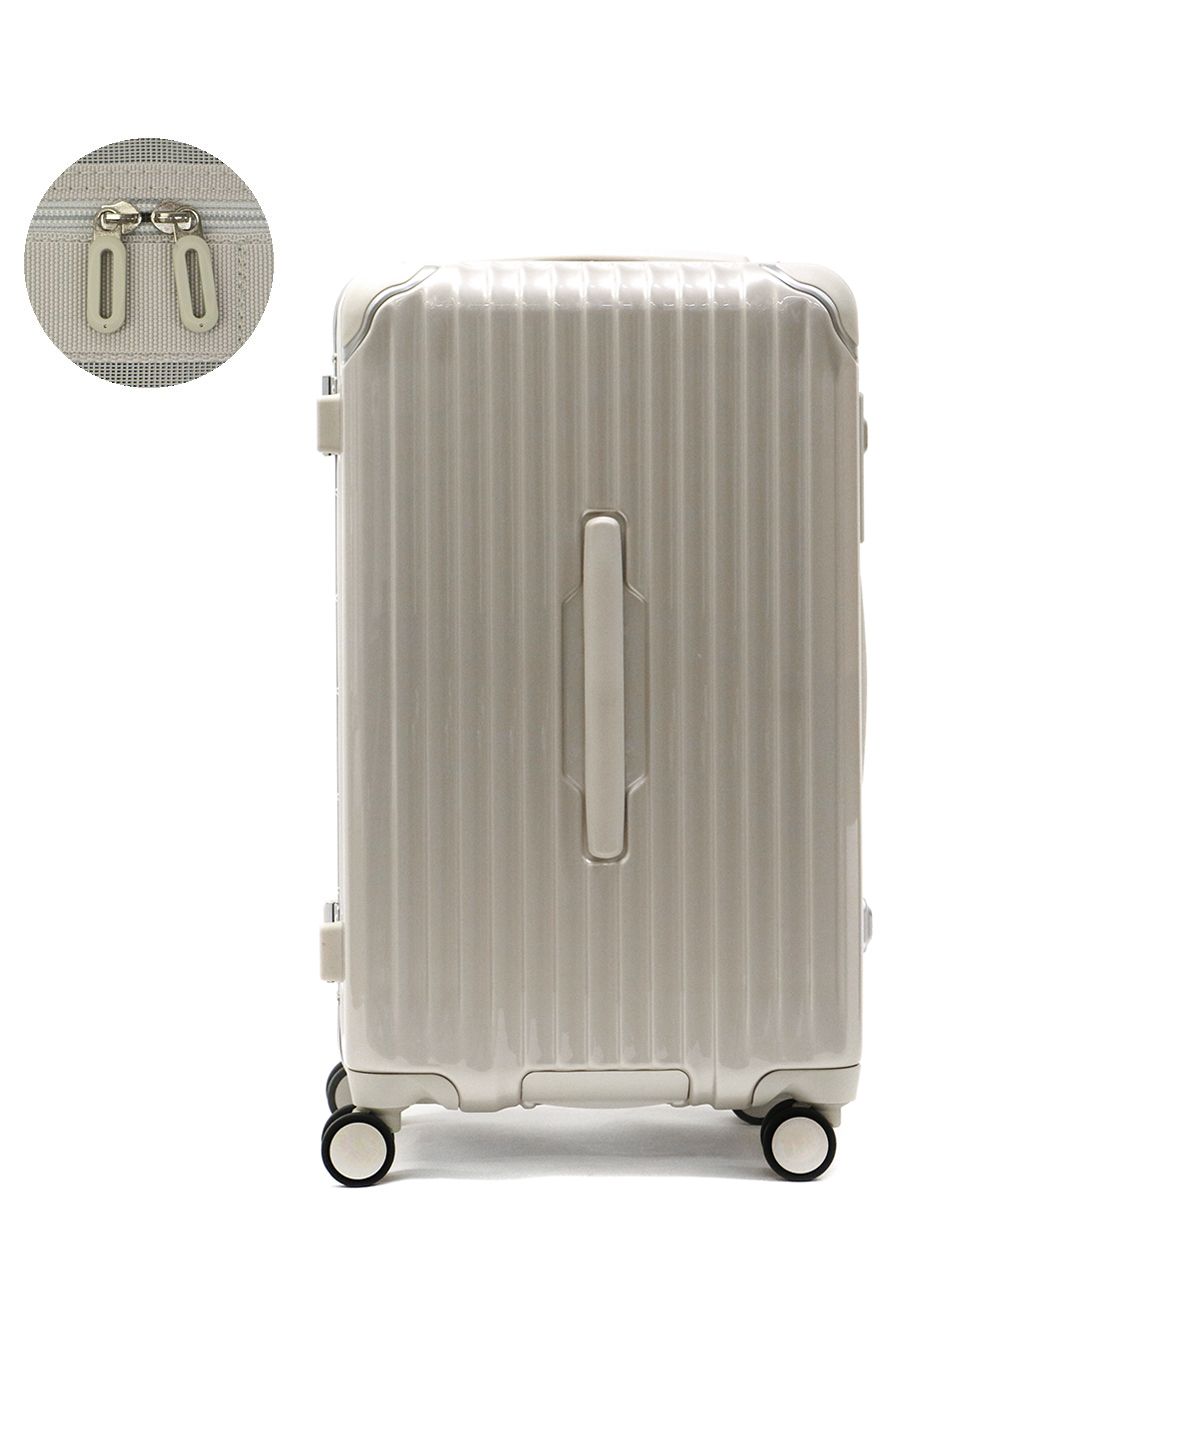 新色追加して再販 正規品2年保証 カーゴ スーツケース CARGO キャリーケース 機内持ち込み フレーム 旅行 出張 Sサイズ 小型 34L  TW-51LG riosmauricio.com